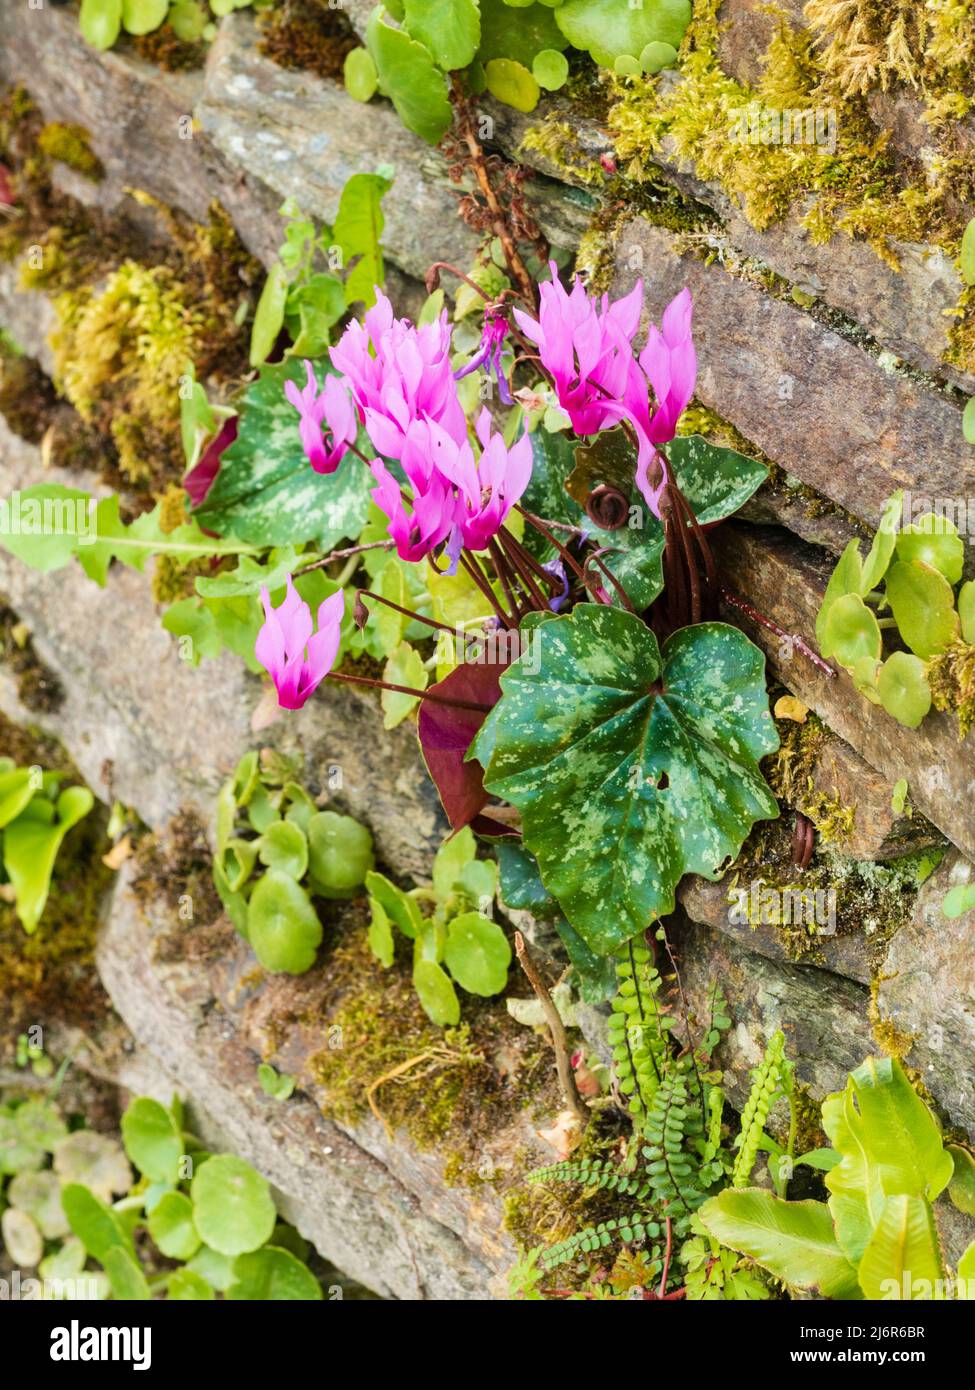 Pain de printemps, Cyclamen repandum à fleurs roses, poussant dans un étau dans un vieux mur de jardin en pierre sèche Banque D'Images